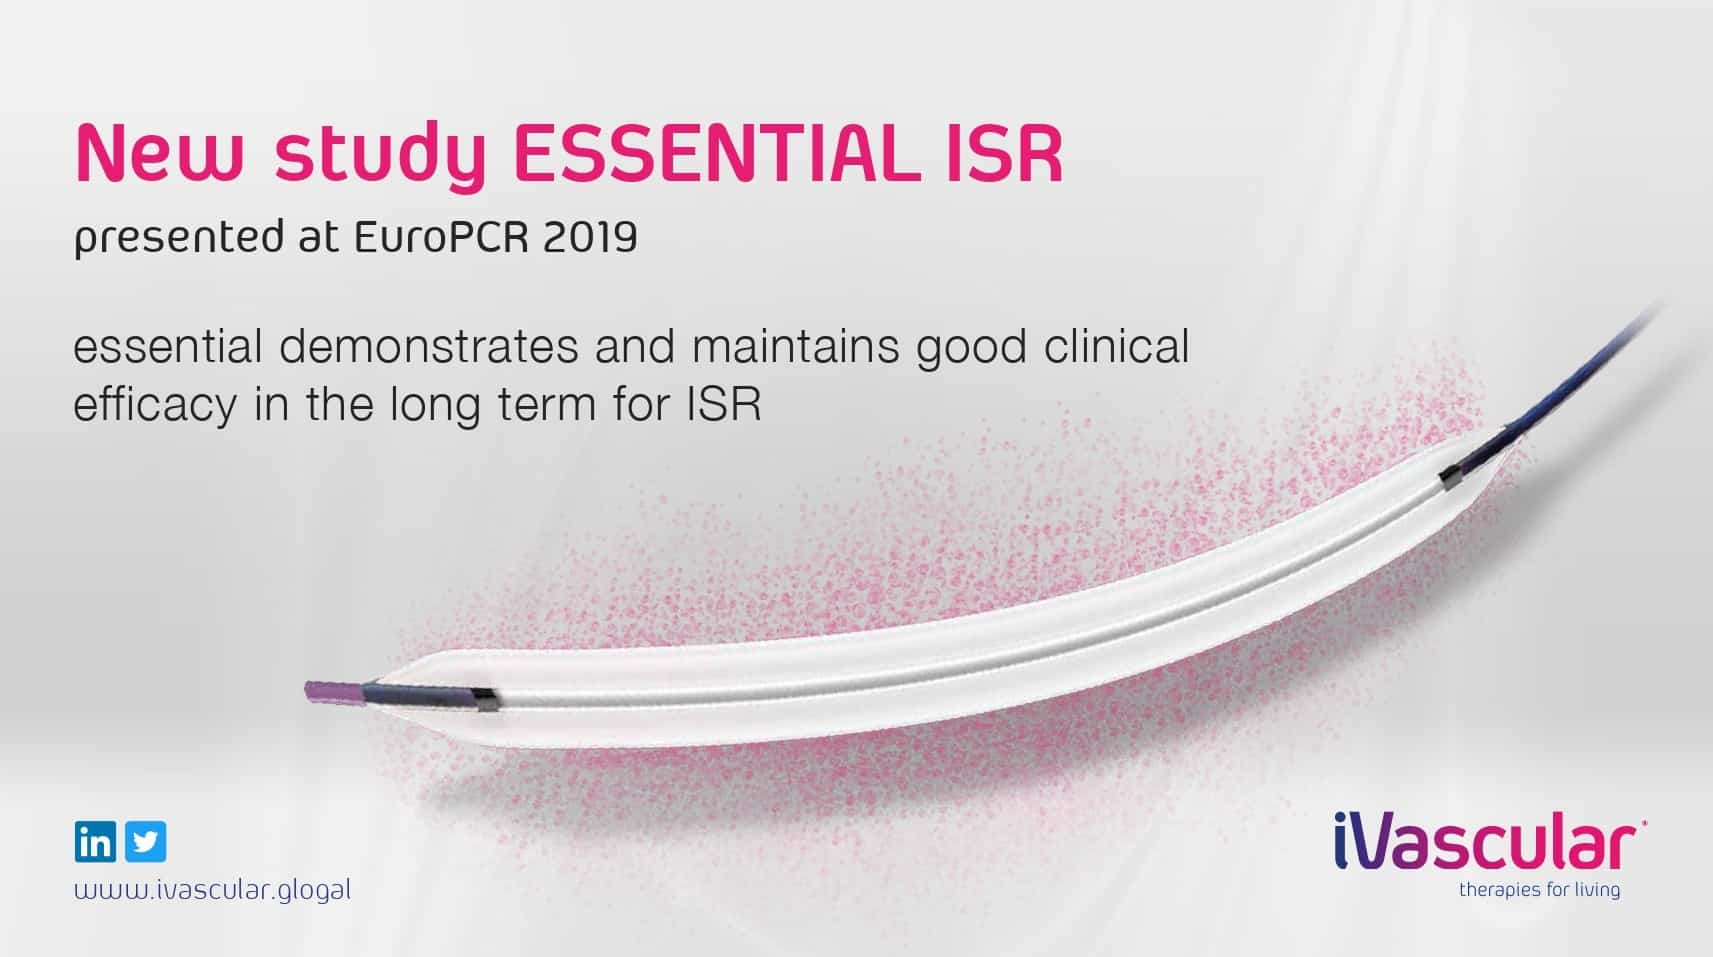 Nuevo estudio en ISR con DCB essential presentado en EuroPCR 2019